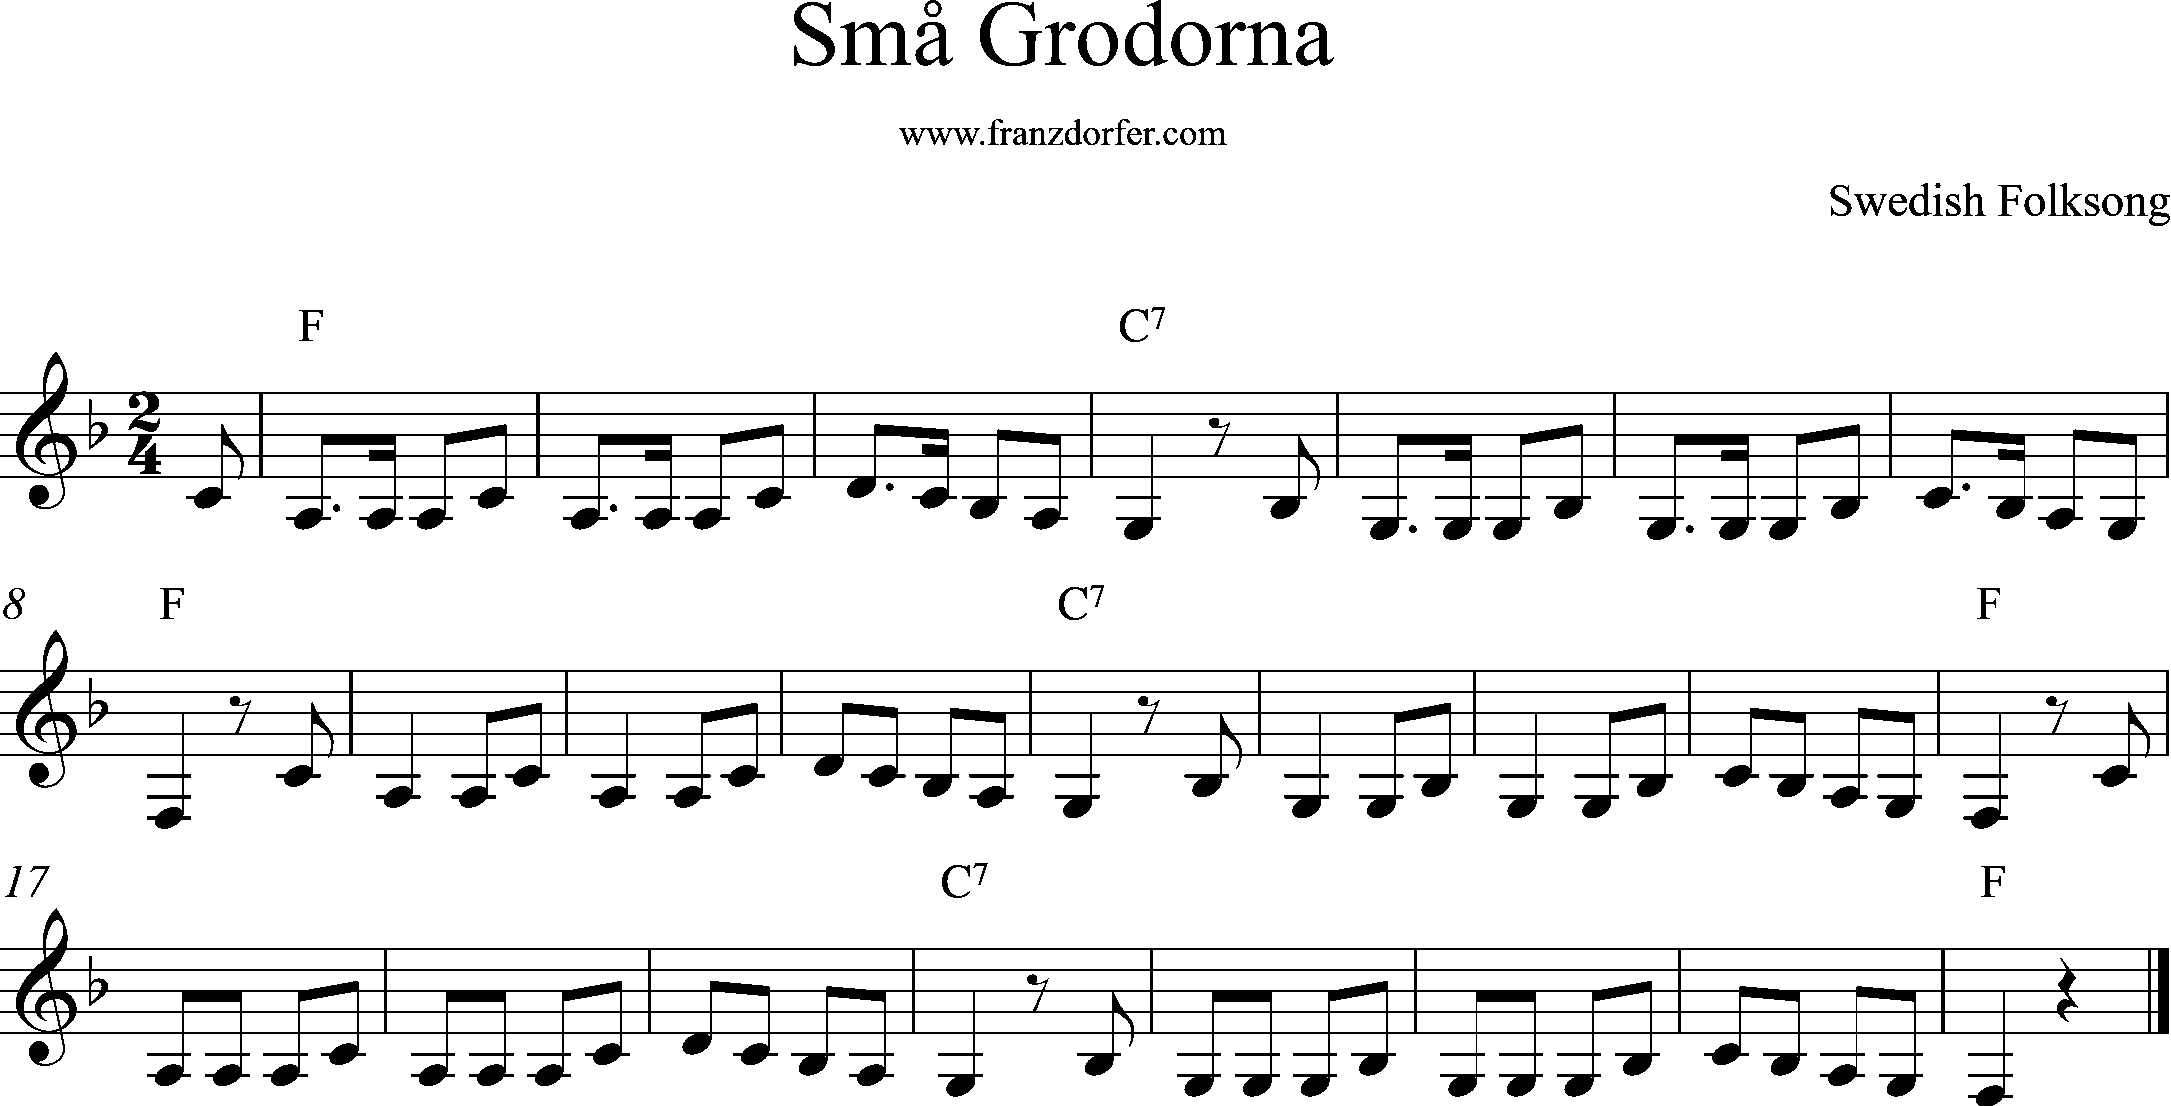 sheetmusic- Små Grodorna